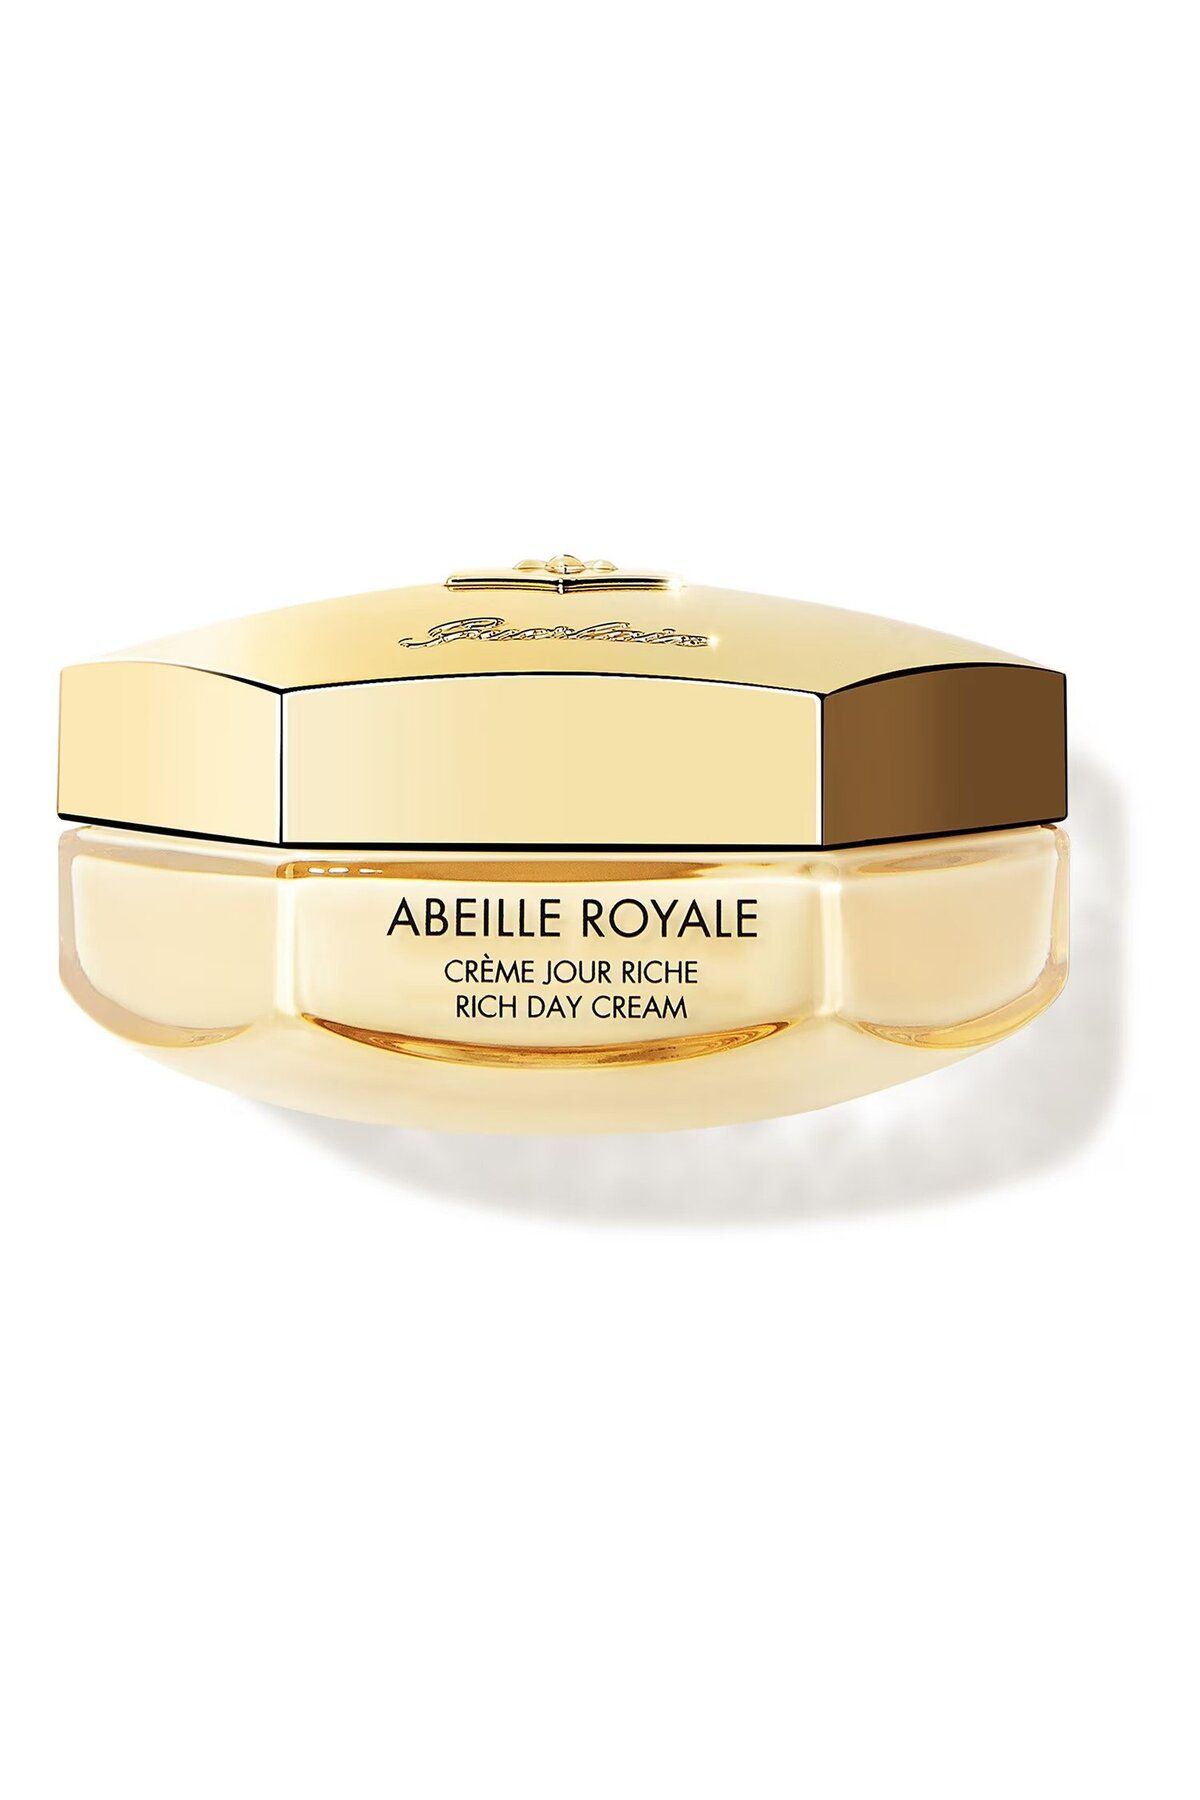 Guerlain Abeille Royale - Cildi Sıkılaştıran, Pürüzsüzleştiren, Aydınlatan Zengin İçerikli Gündüz Kremi 50 ml